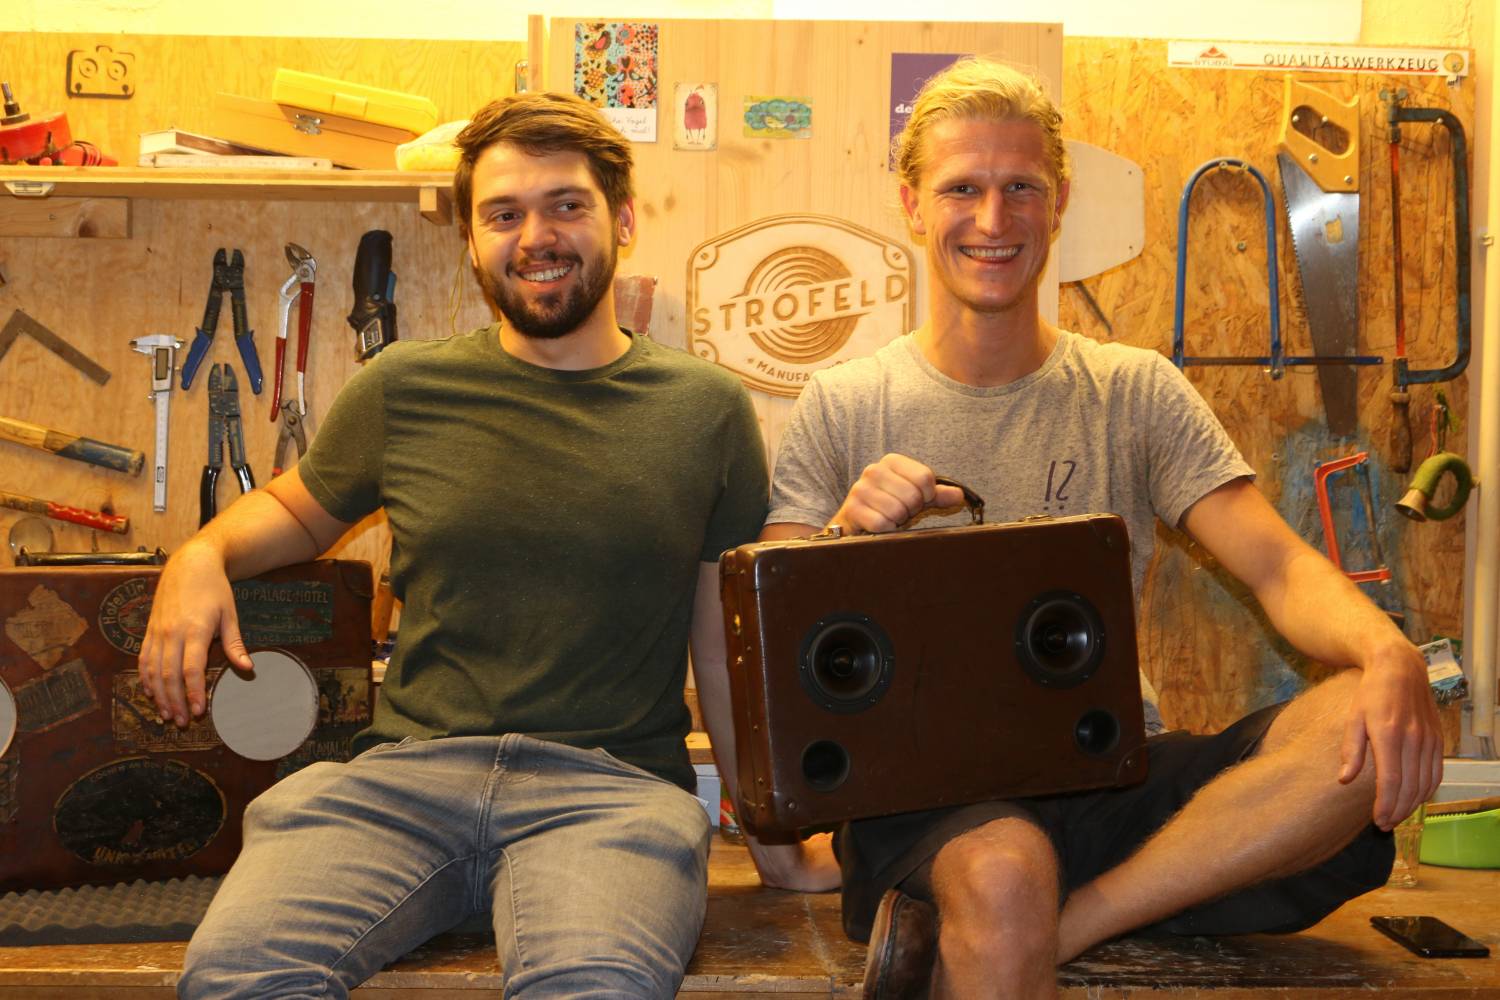 Startup-Gründer & MCiT Alumni Dominik Strobl und sein Geschäftspartner Jonathan Dornfeld in der Werkstatt der STROFELD Manufaktur. Foto: MCI